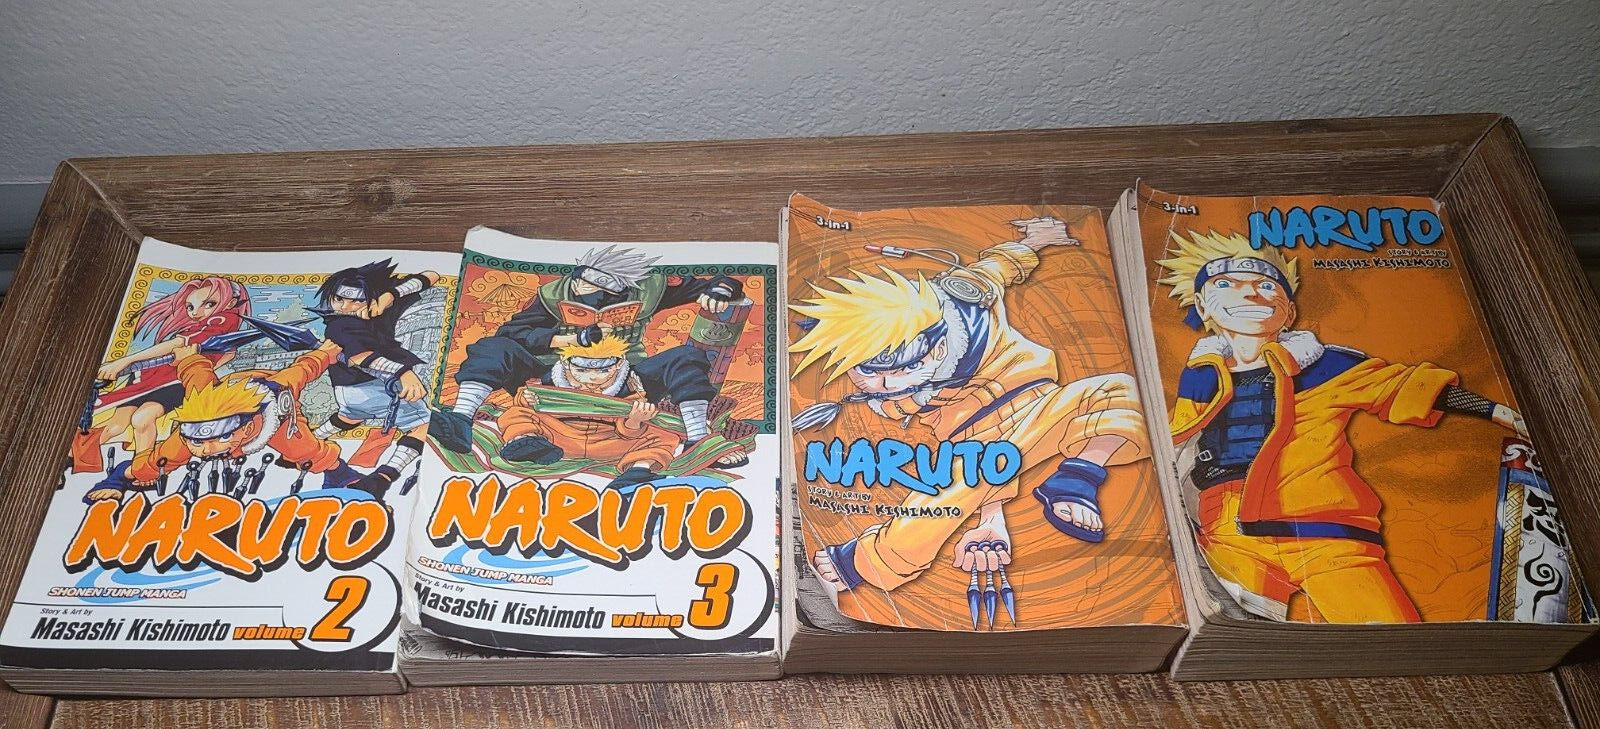 Naruto (3-In-1 Edition) Naruto Vol. 4-6 10-12 Masashi Kishimoto English Manga +2